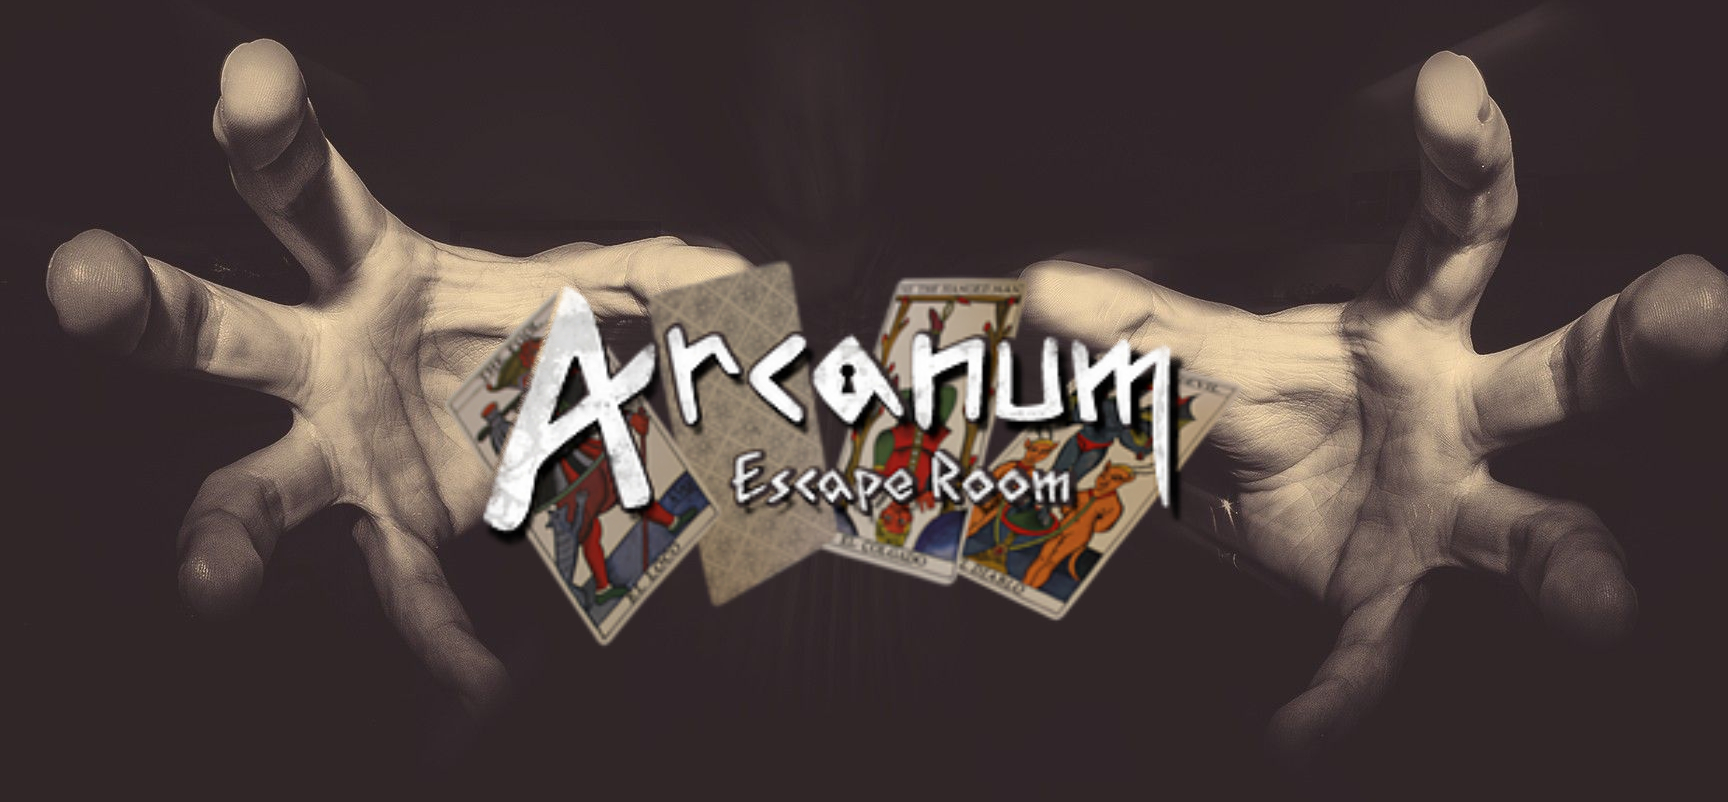 Arcanum "El Loco" - Hidden Escape (Madrid) - Review Escape Room